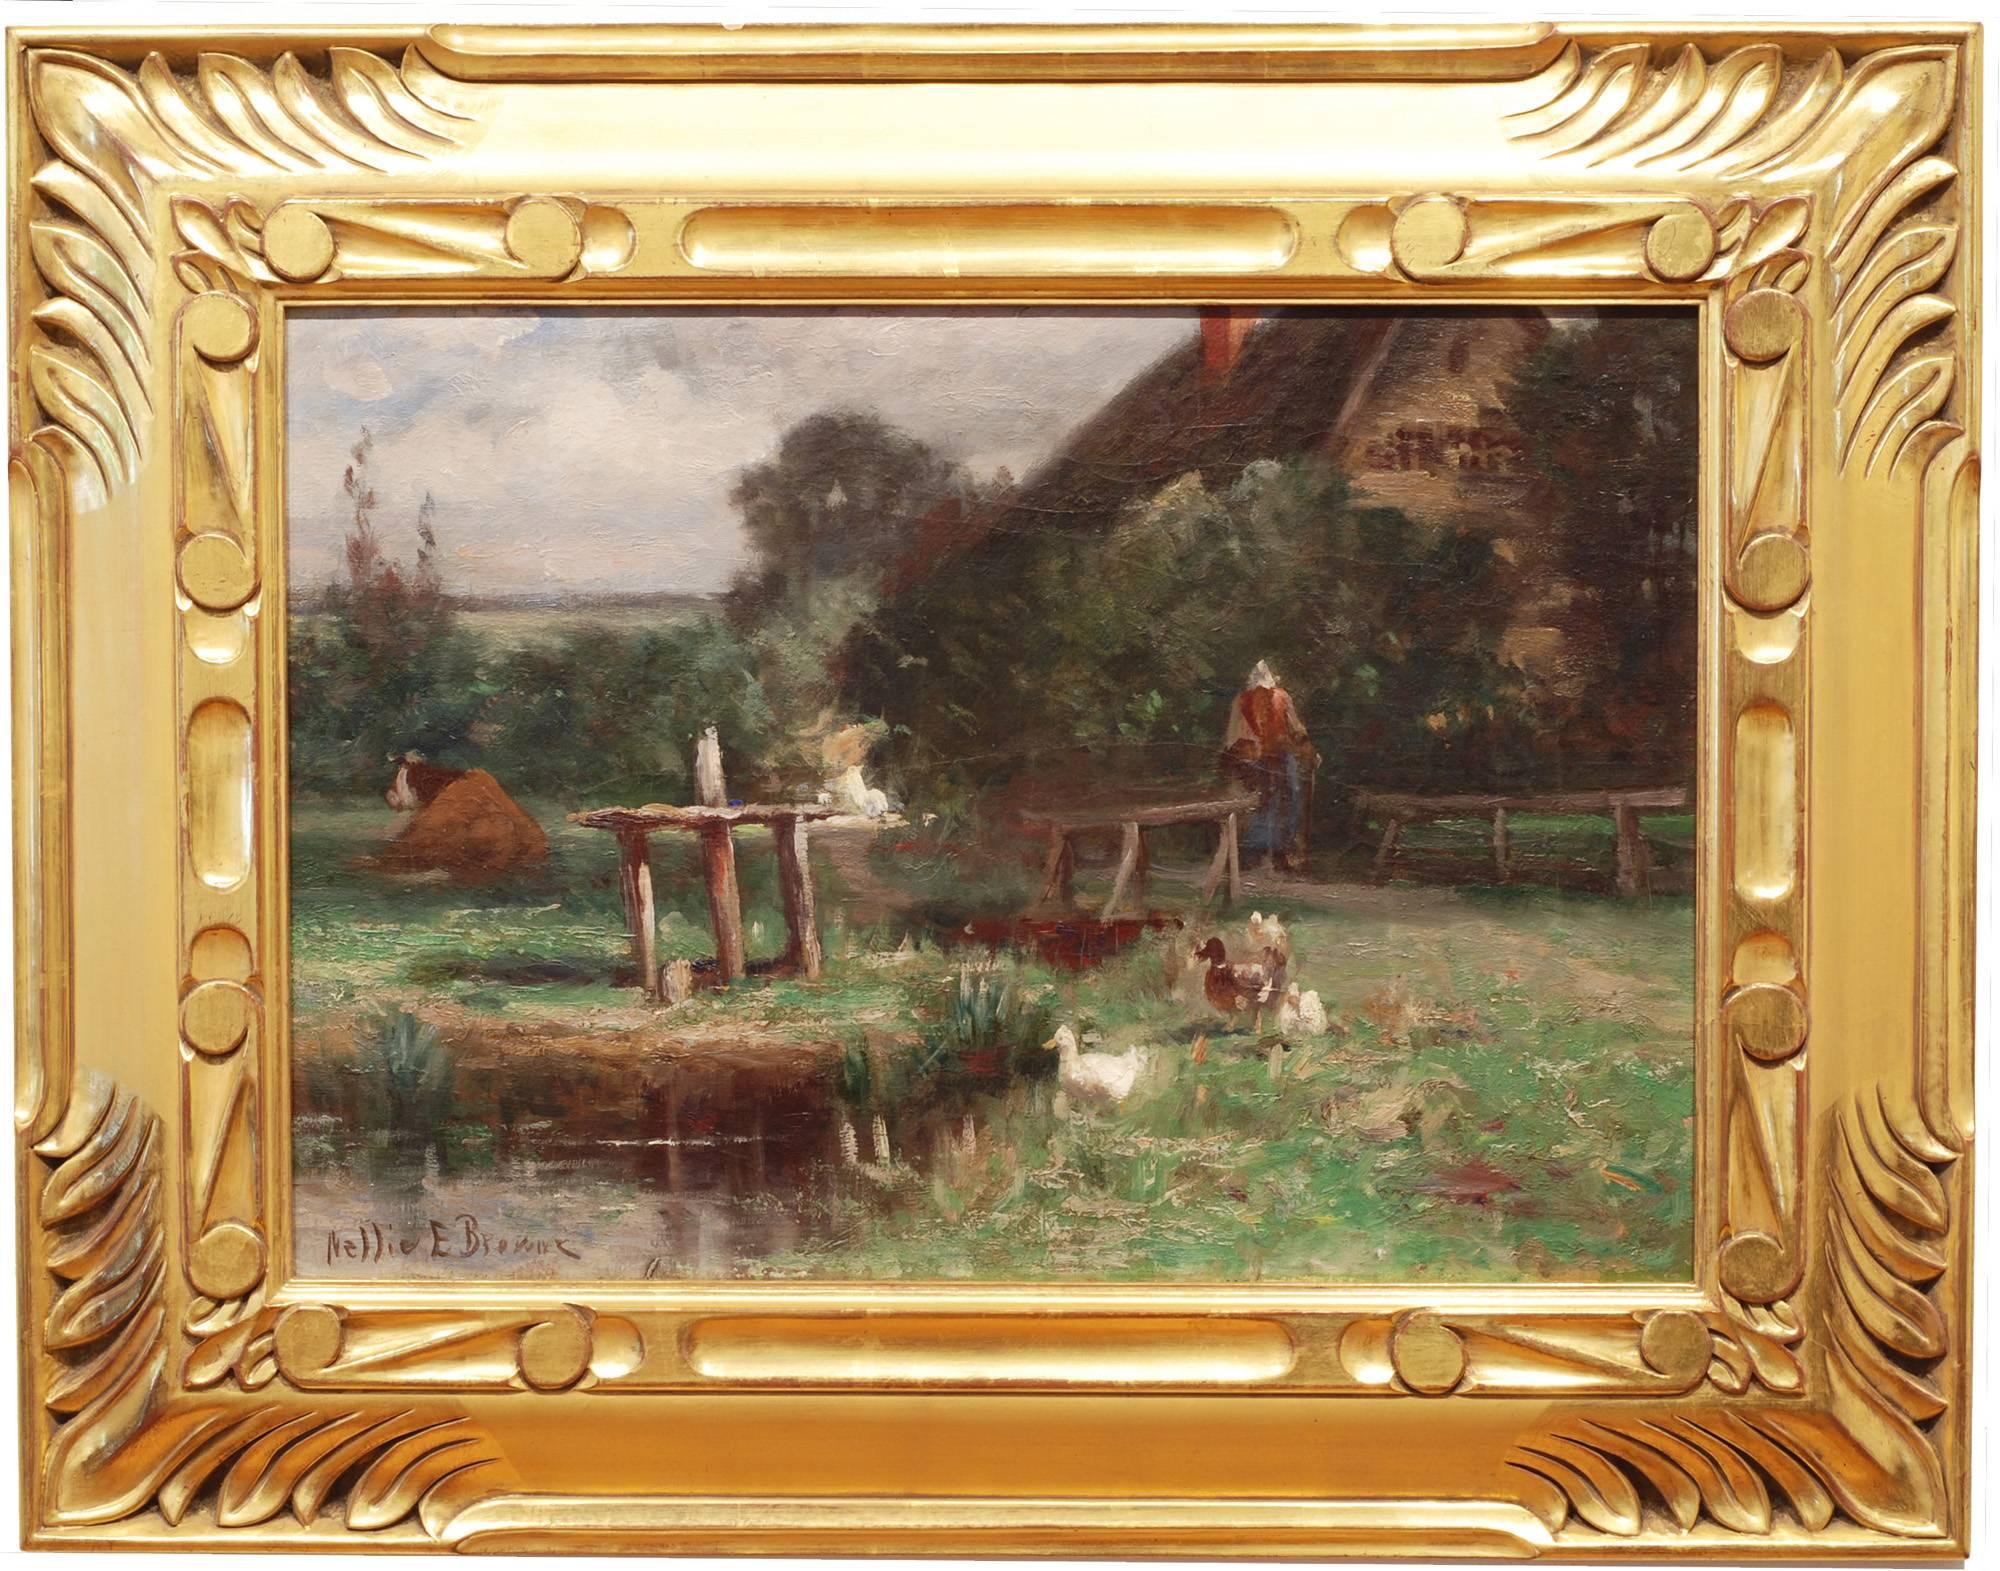 Dans la cour de la ferme - Painting de Nellie E. Brown (fl. 1890-1910)